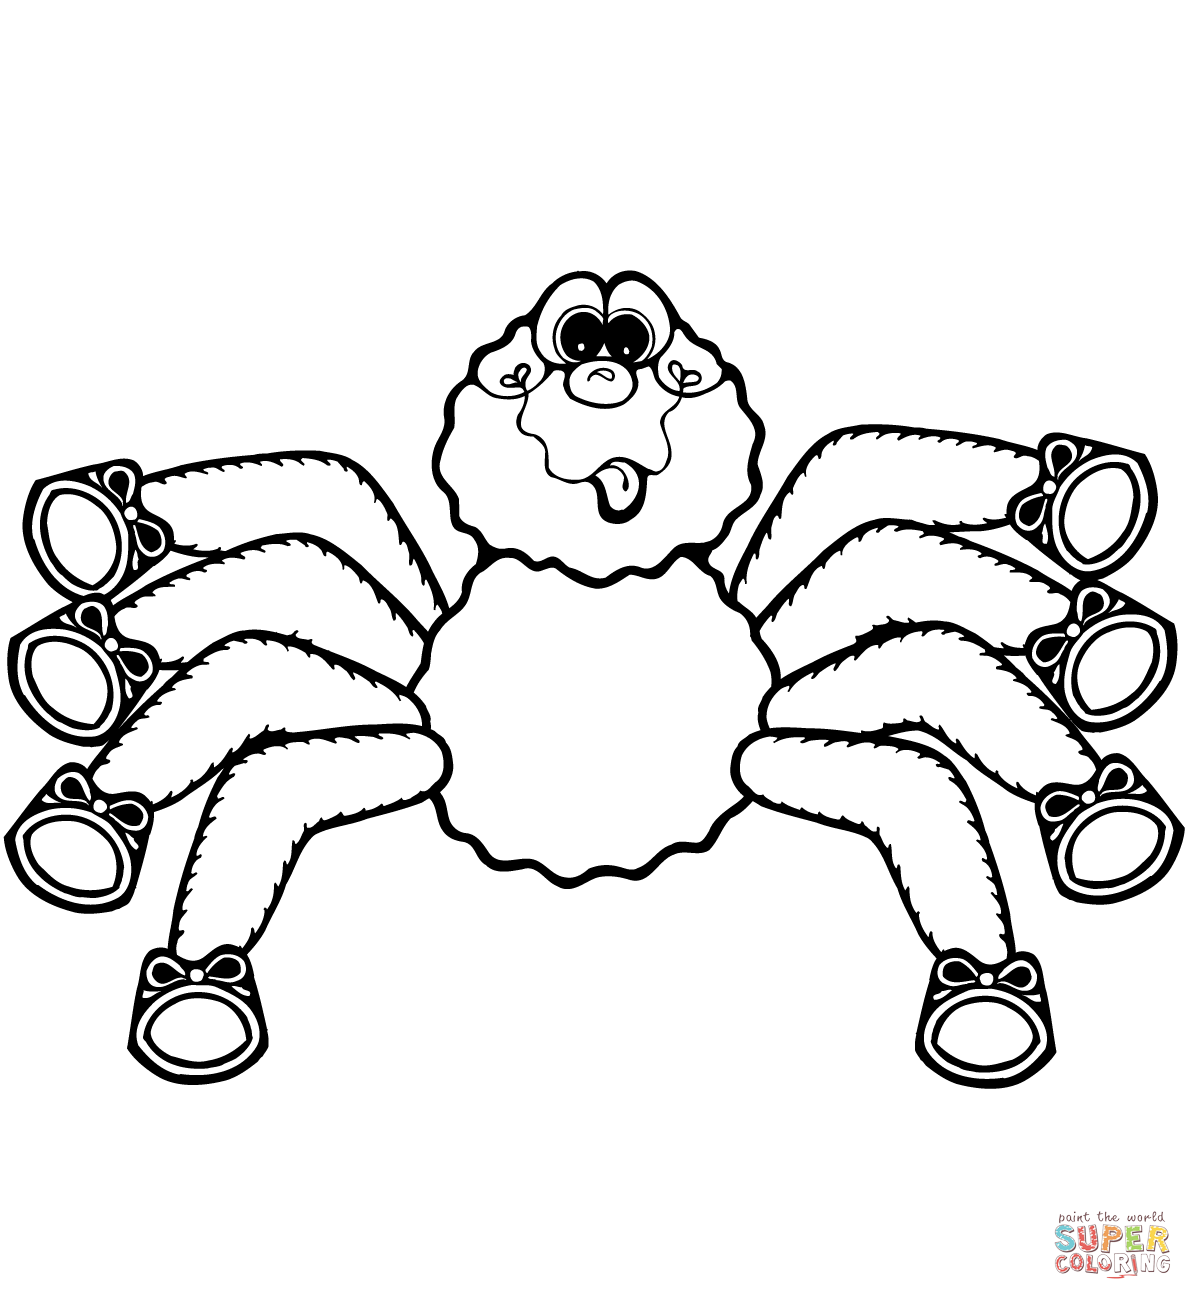 1545183164_cartoon-spider-1-coloring-page para colorir